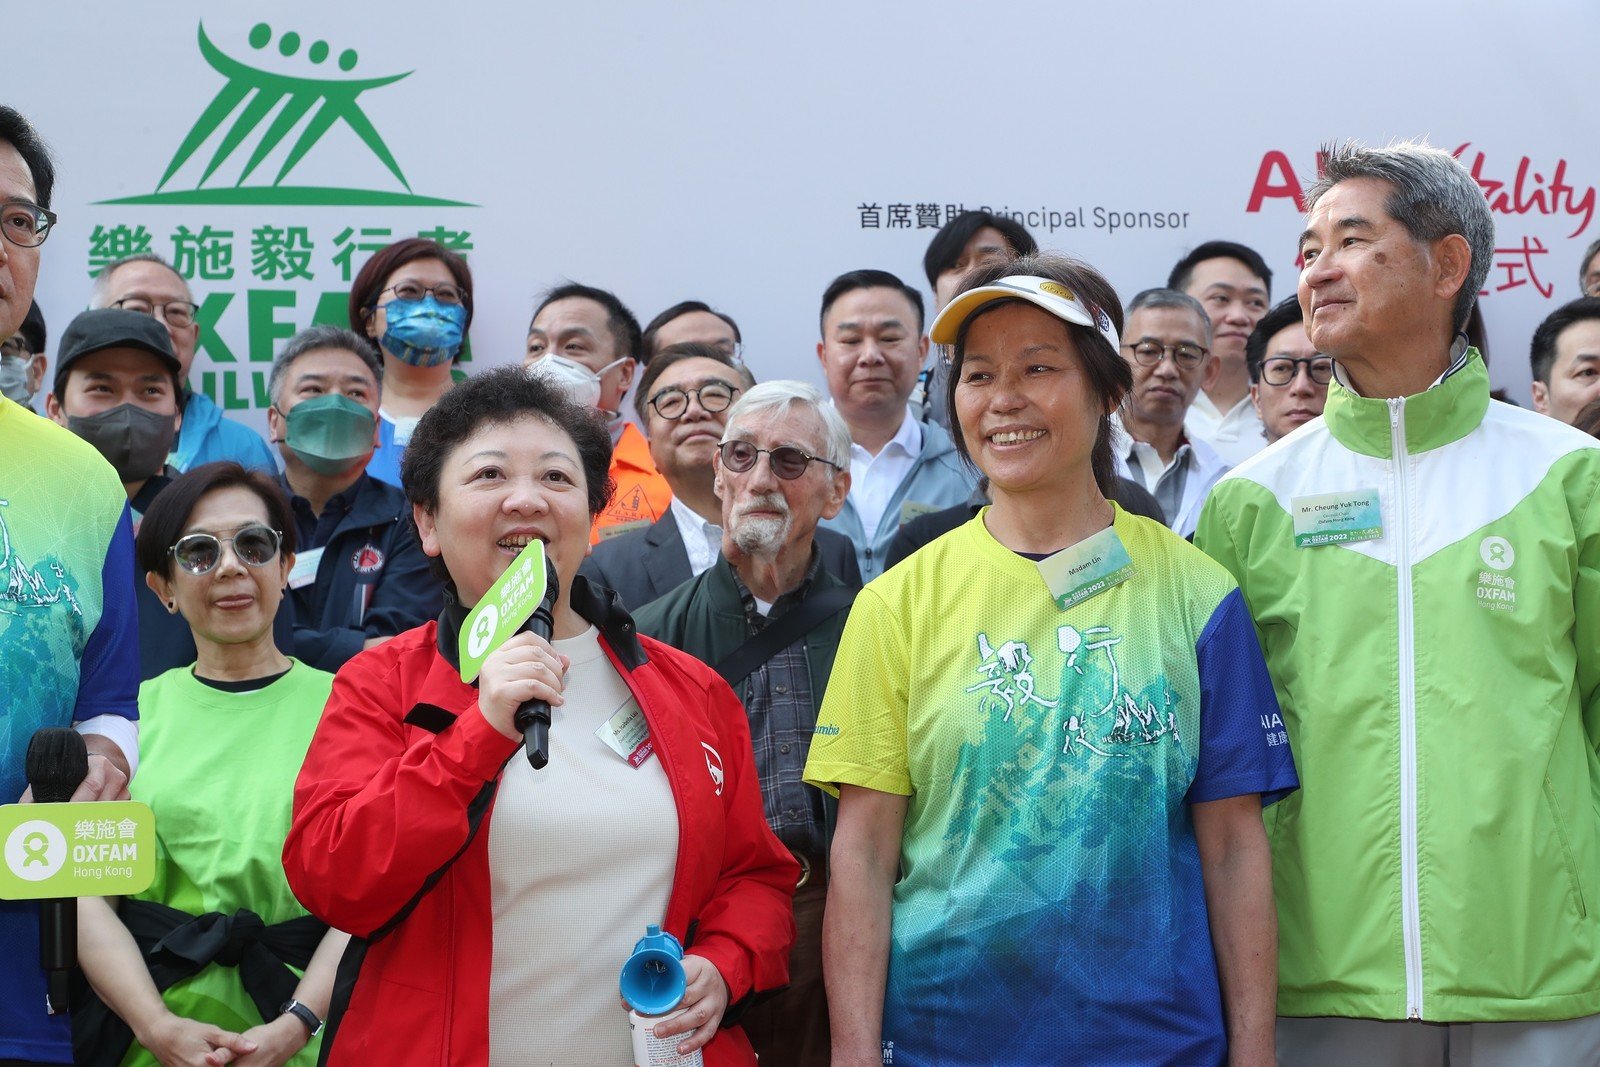 活動首席贊助代表友邦香港及澳門首席客戶、策略及轉型官劉錦珠在「樂施毅行者2022」起步禮上致辭。 